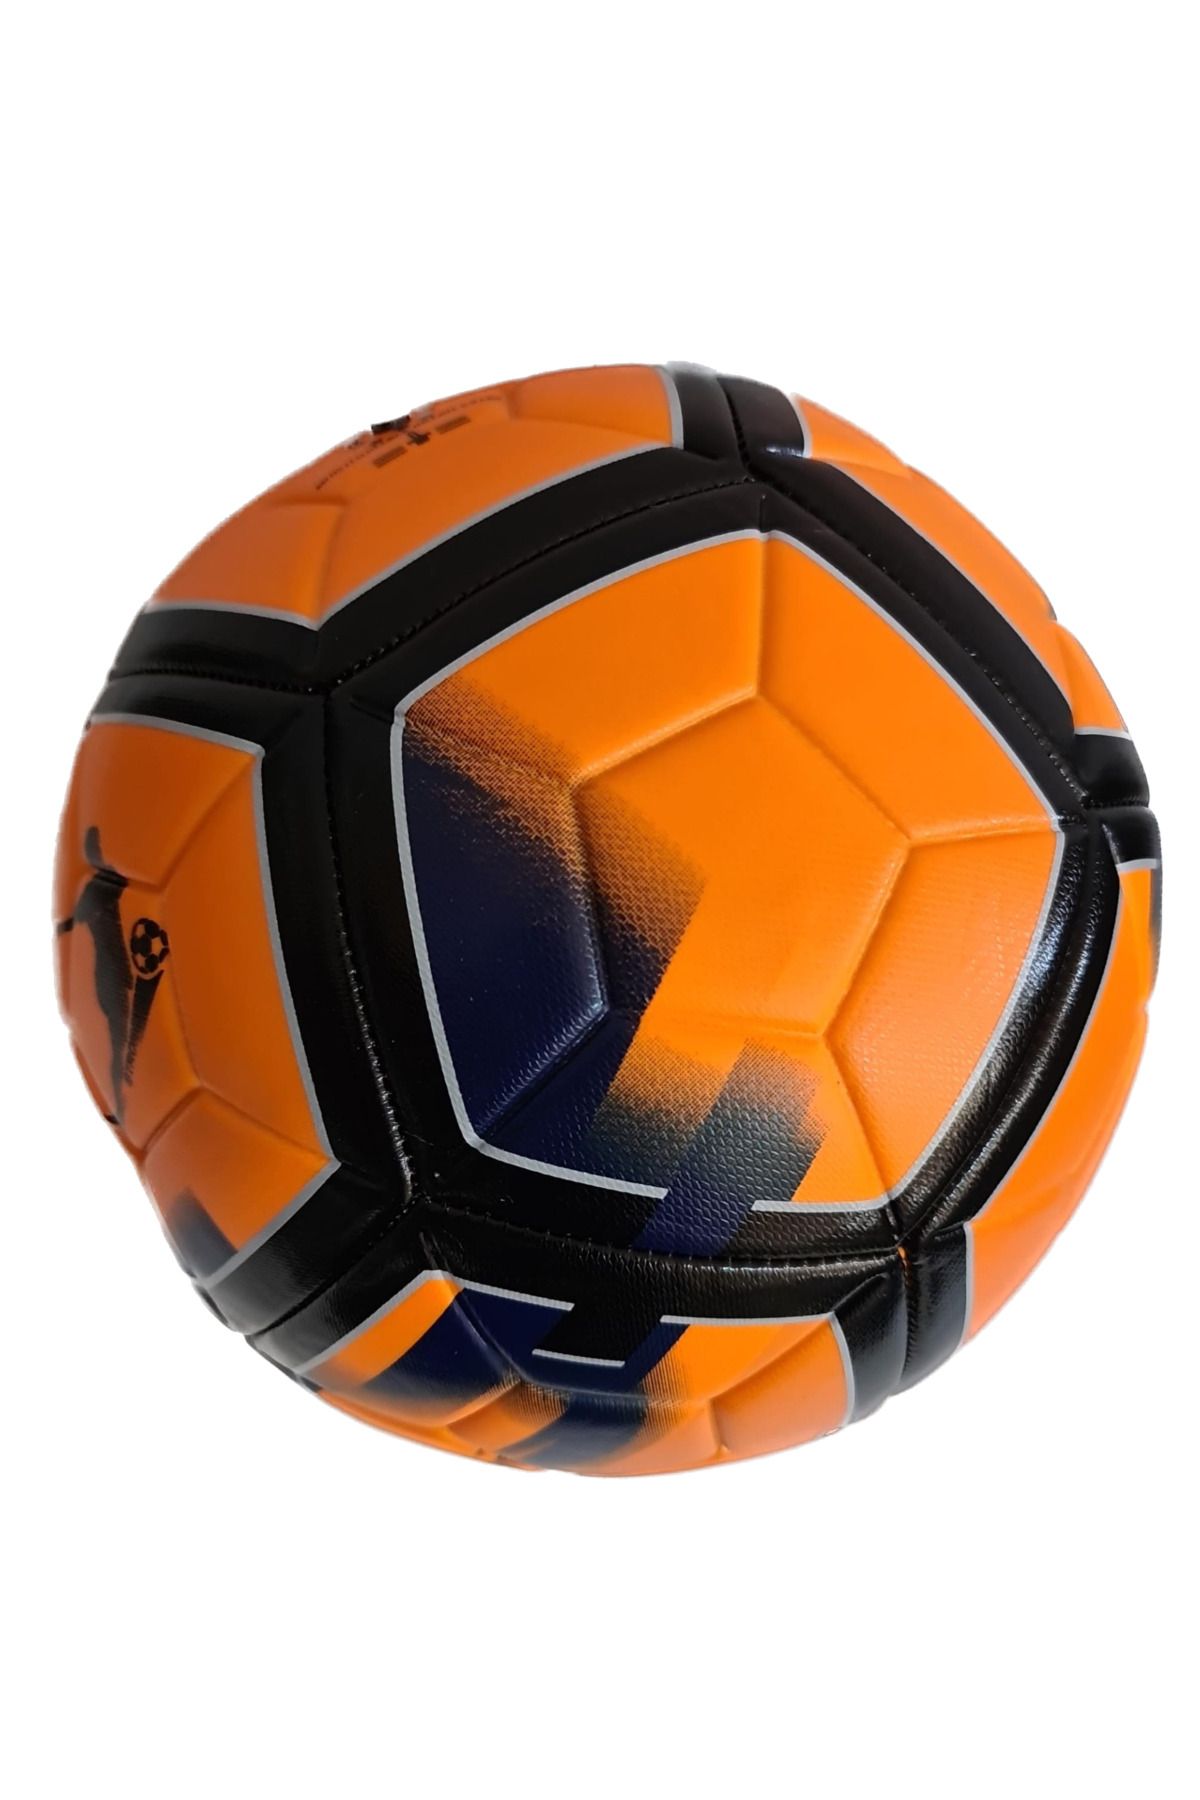 keufman Ft-200 %100 Orijinal Futbol Topu Sert Zemin Halı Saha 4 Astar Futbol Topu